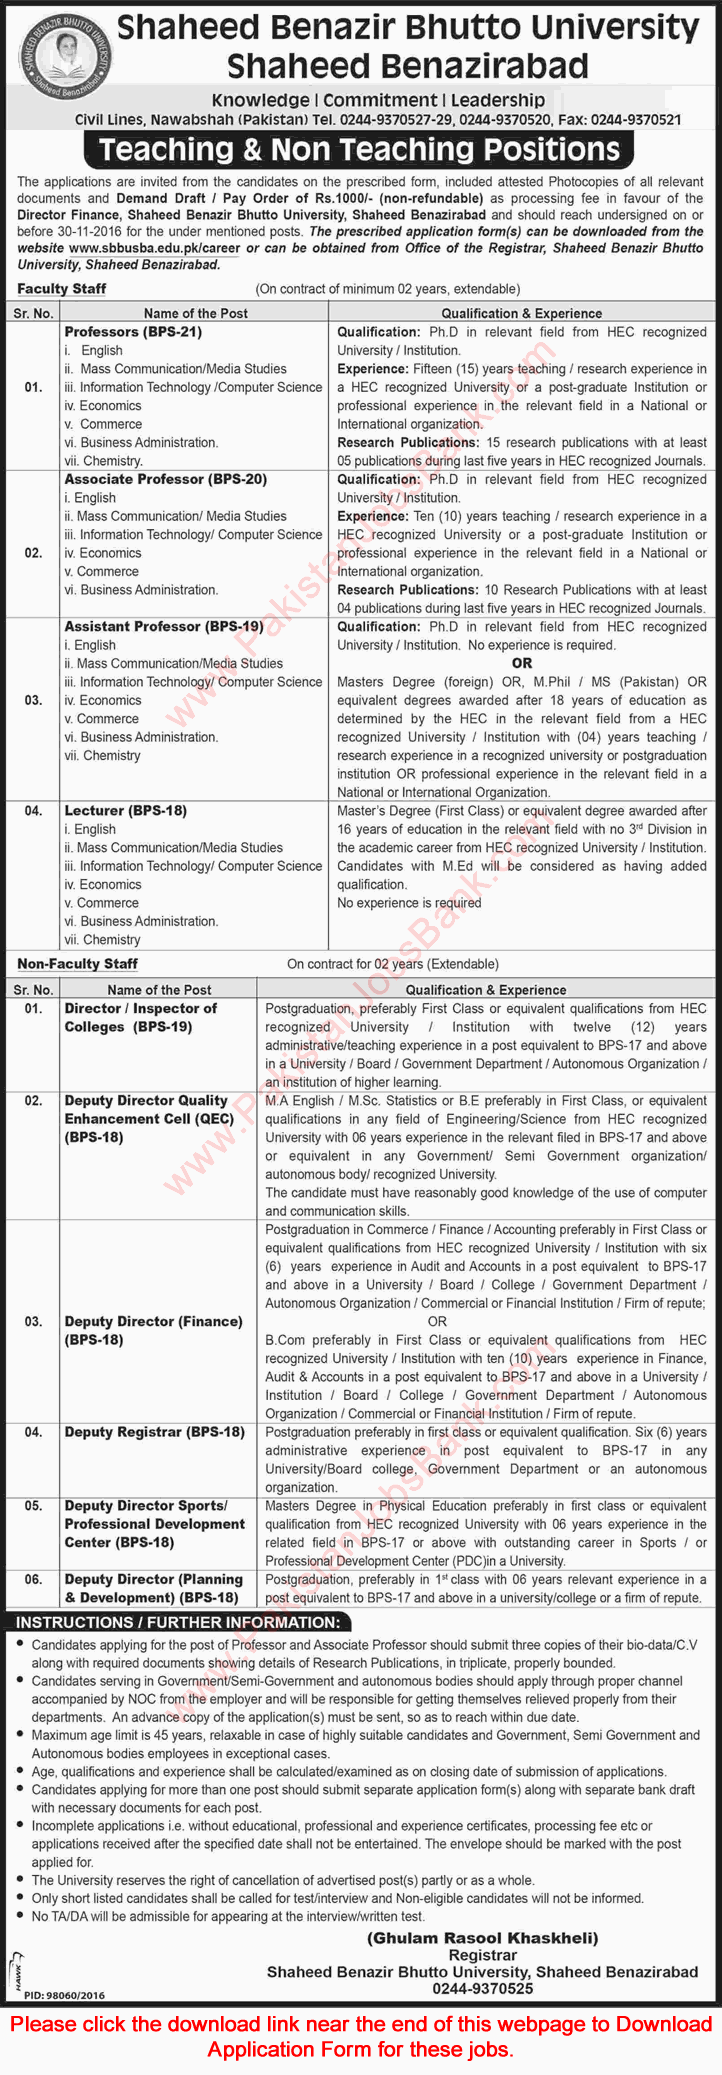 Shaheed Benazir Bhutto University Shaheed Benazirabad Jobs November 2016 Application Form Latest